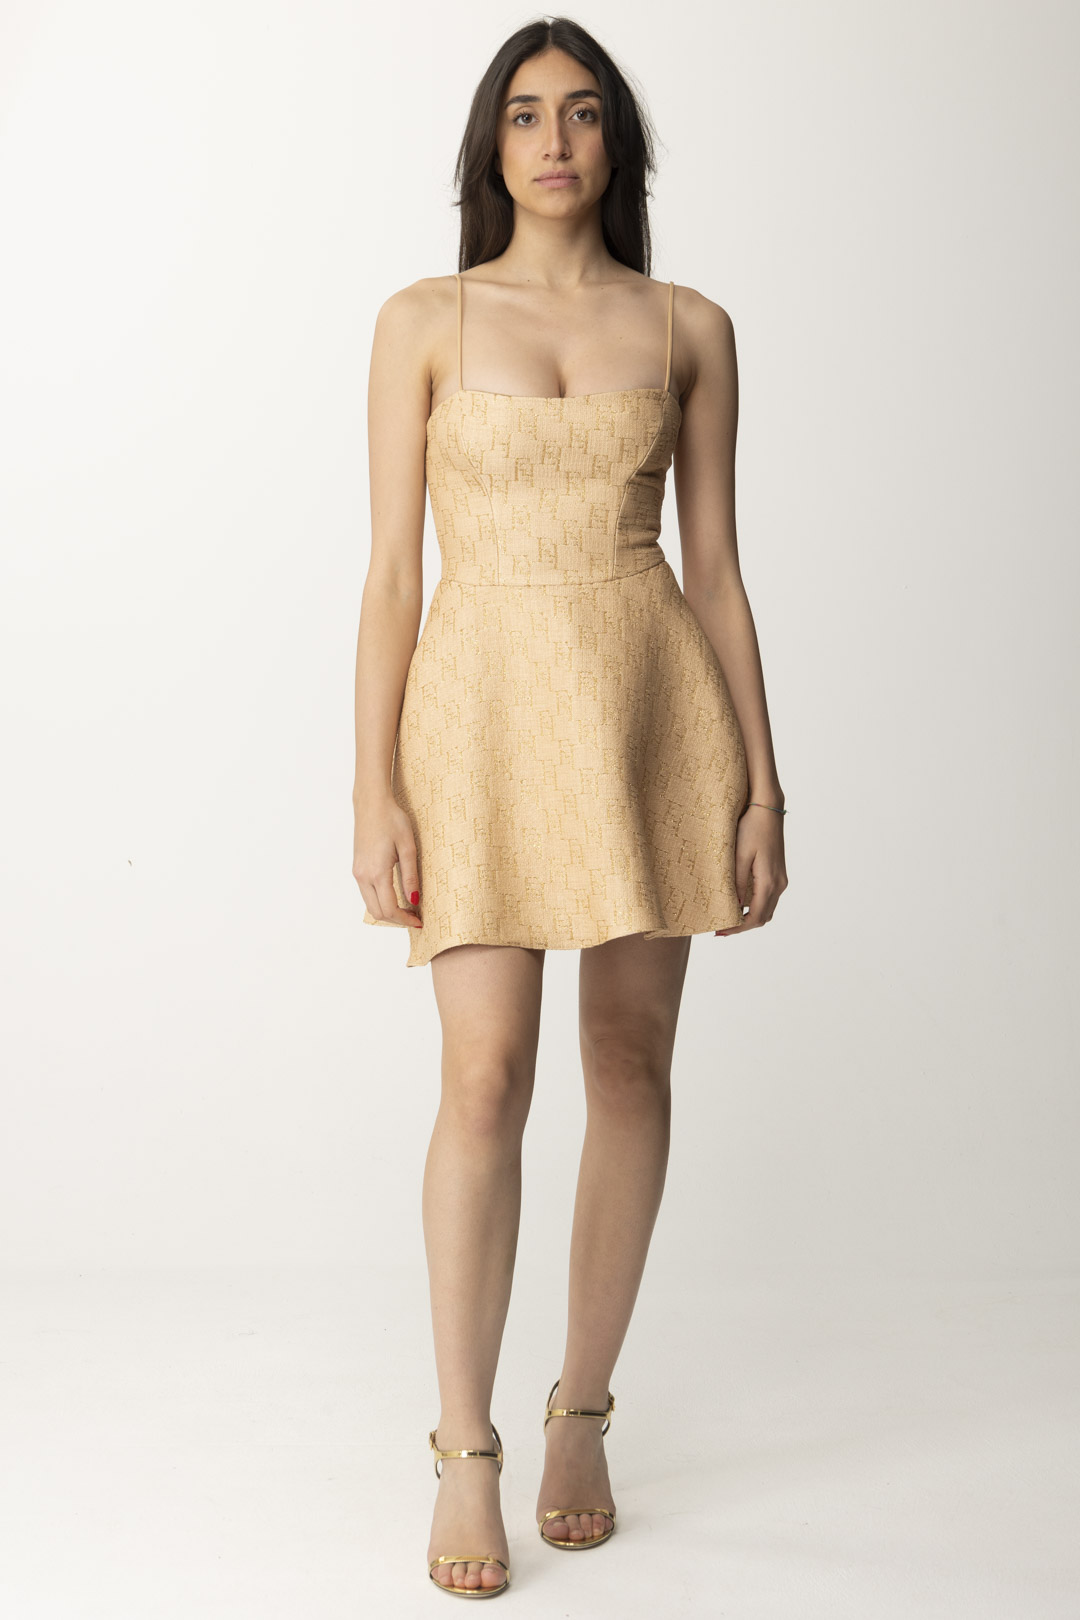 Anteprima: Elisabetta Franchi Mini abito in rafia stampa logo PAGLIA/ORO